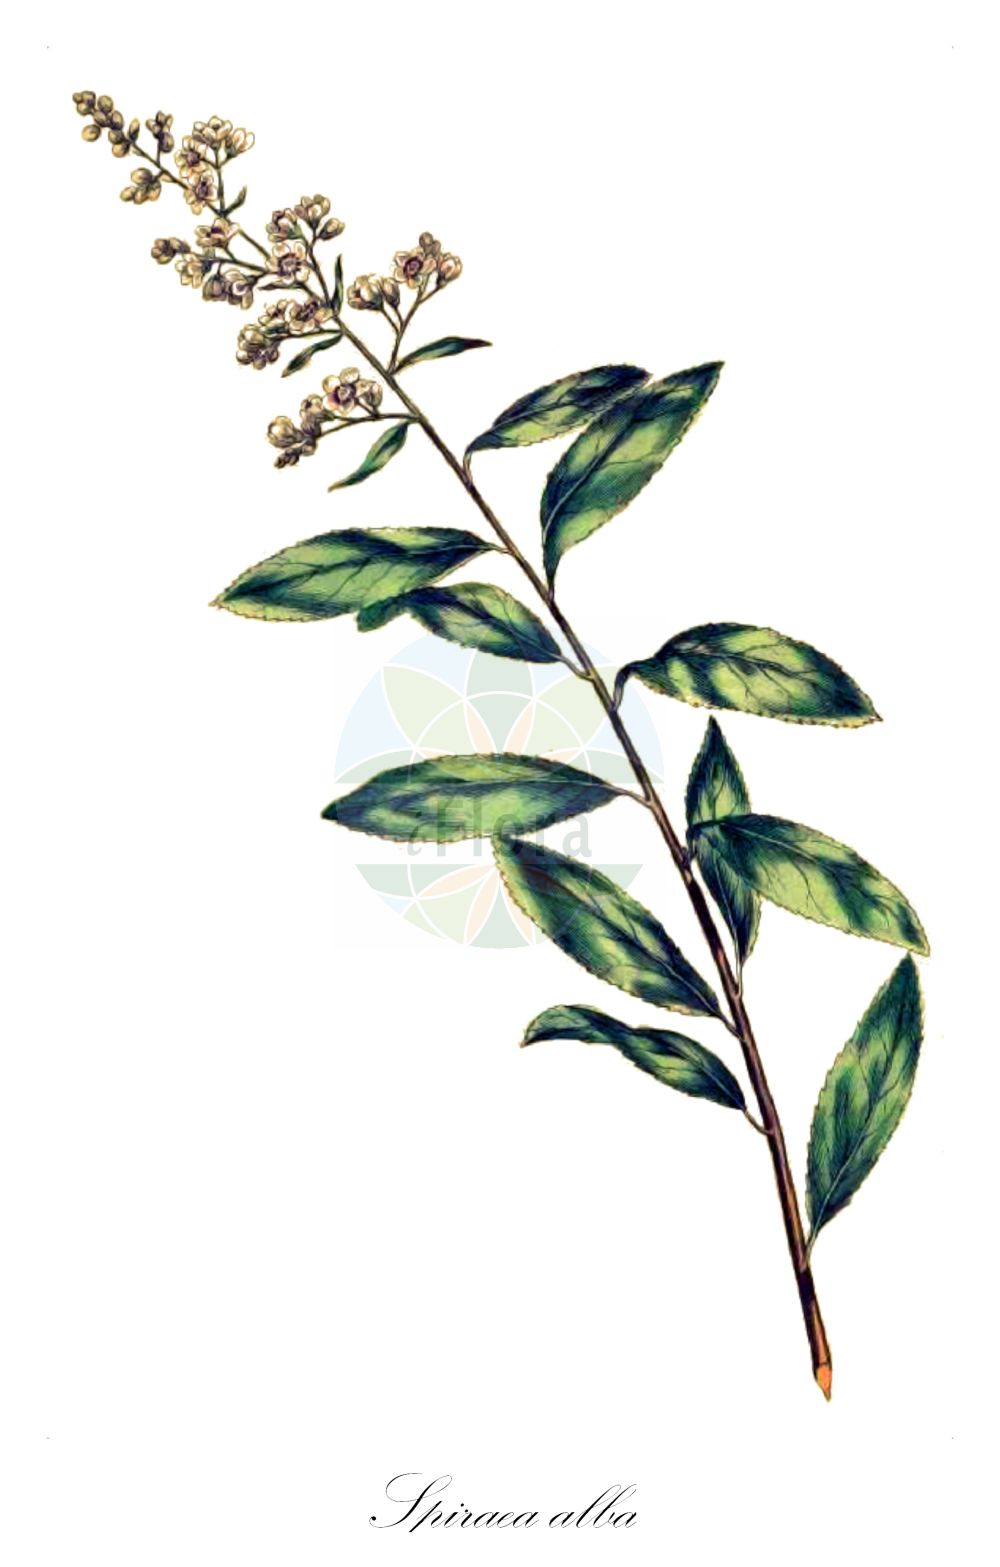 Historische Abbildung von Spiraea alba (Weißer Spierstrauch - Pale Bridewort). Das Bild zeigt Blatt, Bluete, Frucht und Same. ---- Historical Drawing of Spiraea alba (Weißer Spierstrauch - Pale Bridewort). The image is showing leaf, flower, fruit and seed.(Spiraea alba,Weißer Spierstrauch,Pale Bridewort,Spiraea alba,Spiraea ciliata,Spiraea cuneifolia,Spiraea flexuosa,Spiraea lanceolata,Spiraea lancifolia,Spiraea latifolia,Spiraea paniculata,Spiraea undulata,Weisser Spierstrauch,Pale Bridewort,Meadowsweet,White Meadowsweet,Narrow-leaf Meadowsweet,Narrow-leaf Spirea,Spiraea,Spierstrauch,Brideworts,Rosaceae,Rosengewächse,Rose family,Blatt,Bluete,Frucht,Same,leaf,flower,fruit,seed,Miller (1755-1760))